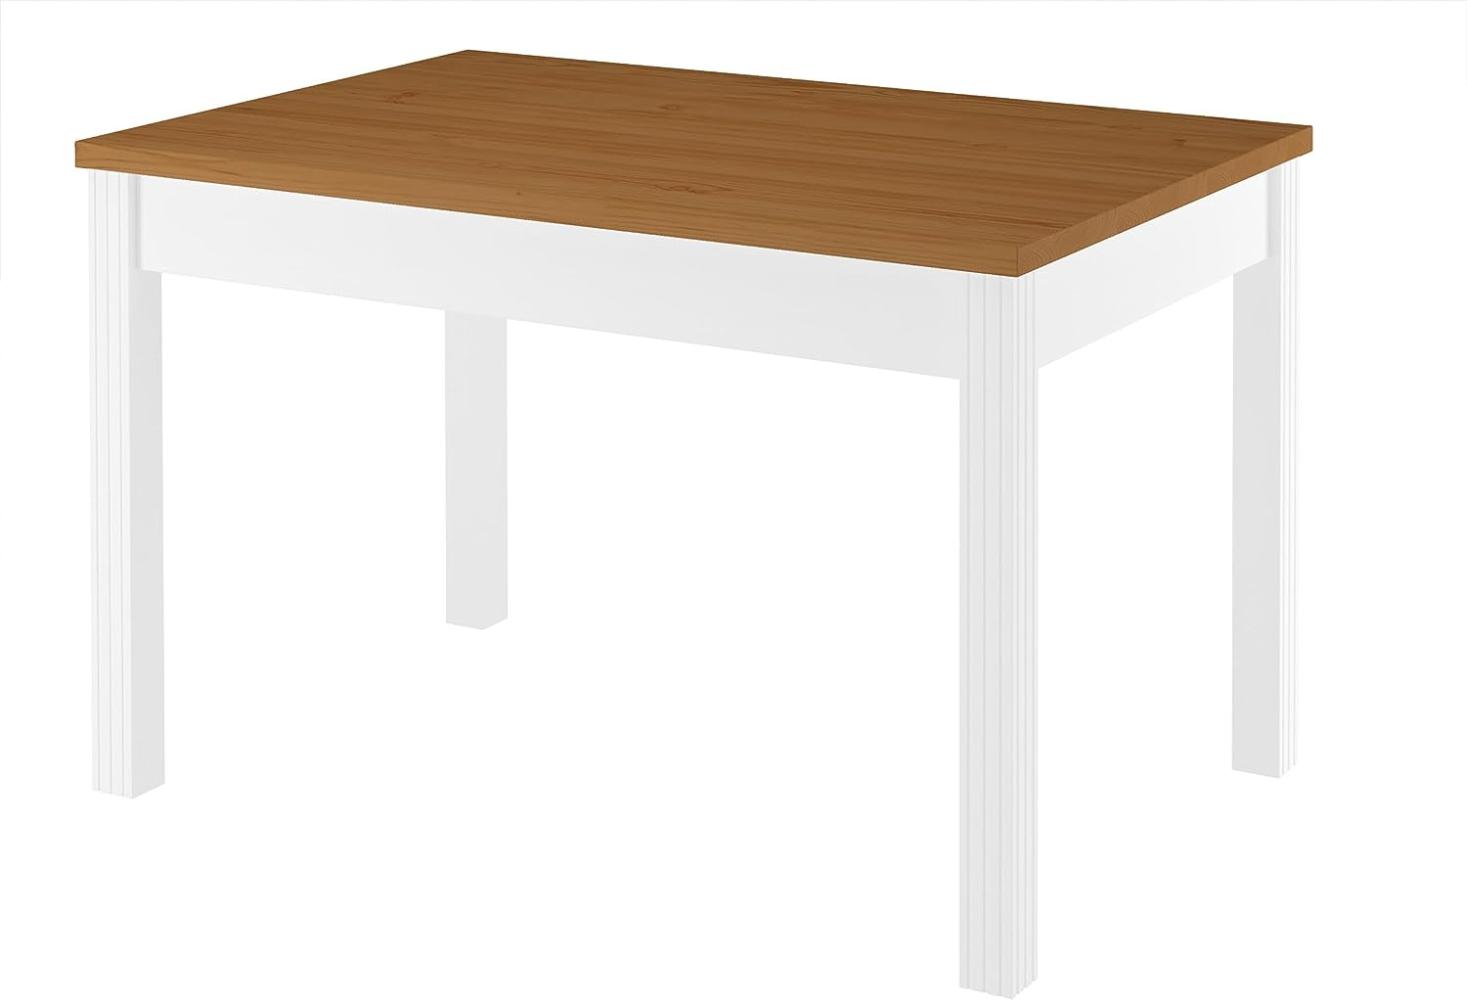 Zweifarbiger Tisch 80x120 Esstisch Tischplatte Eichefarben weiße Beine Massivholz 90. 70-51CE Bild 1